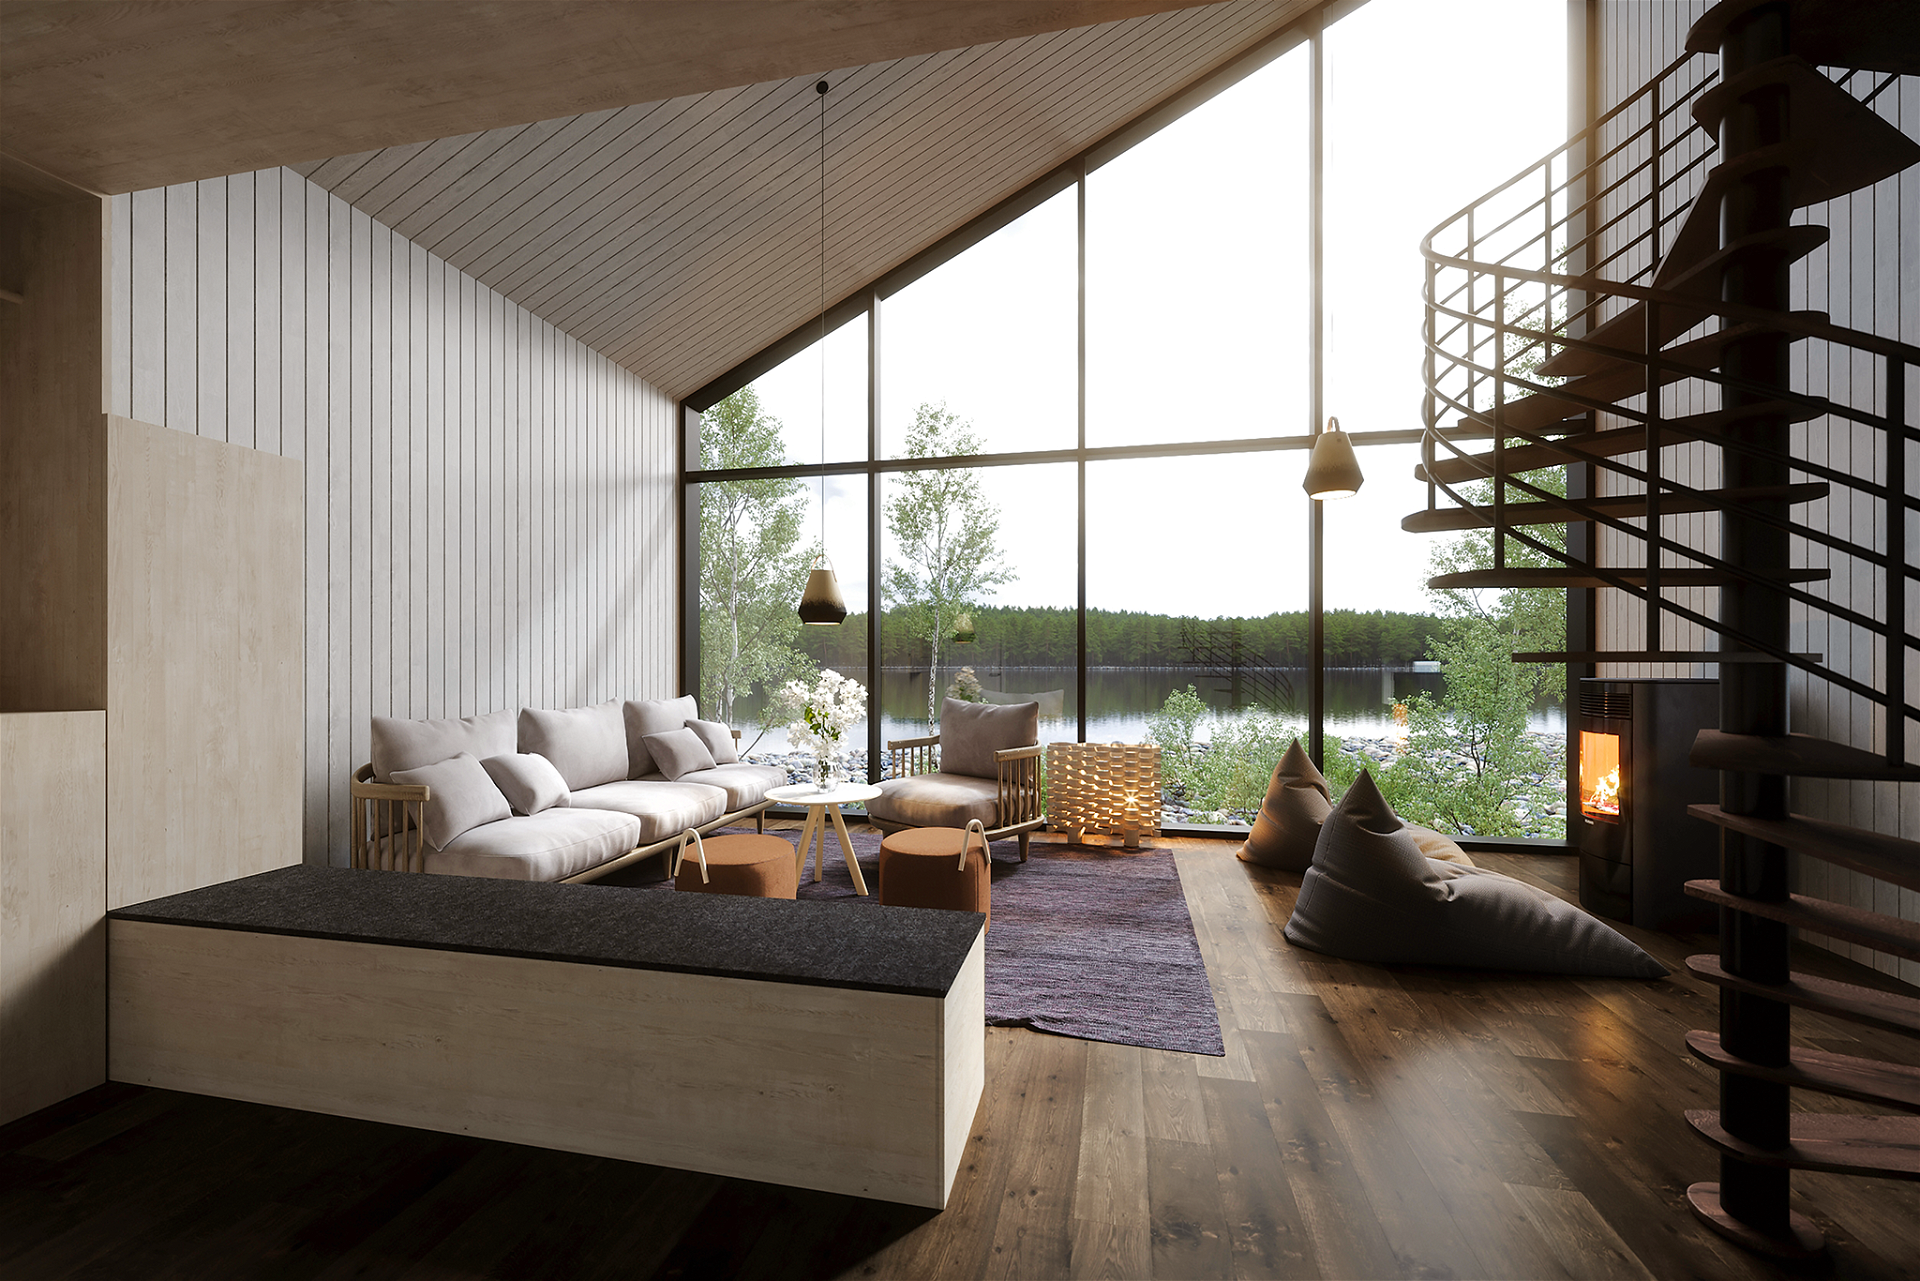 Design Die Zimmerkategorie »Land« bietet Platz für bis zu fünf Personen. Dank großer Fensterfront fühlt man eine direkte Verbindung zur umliegenden Natur. Die Dachterrasse bietet Ruhesuchenden einen entspannten Rückzugsort.